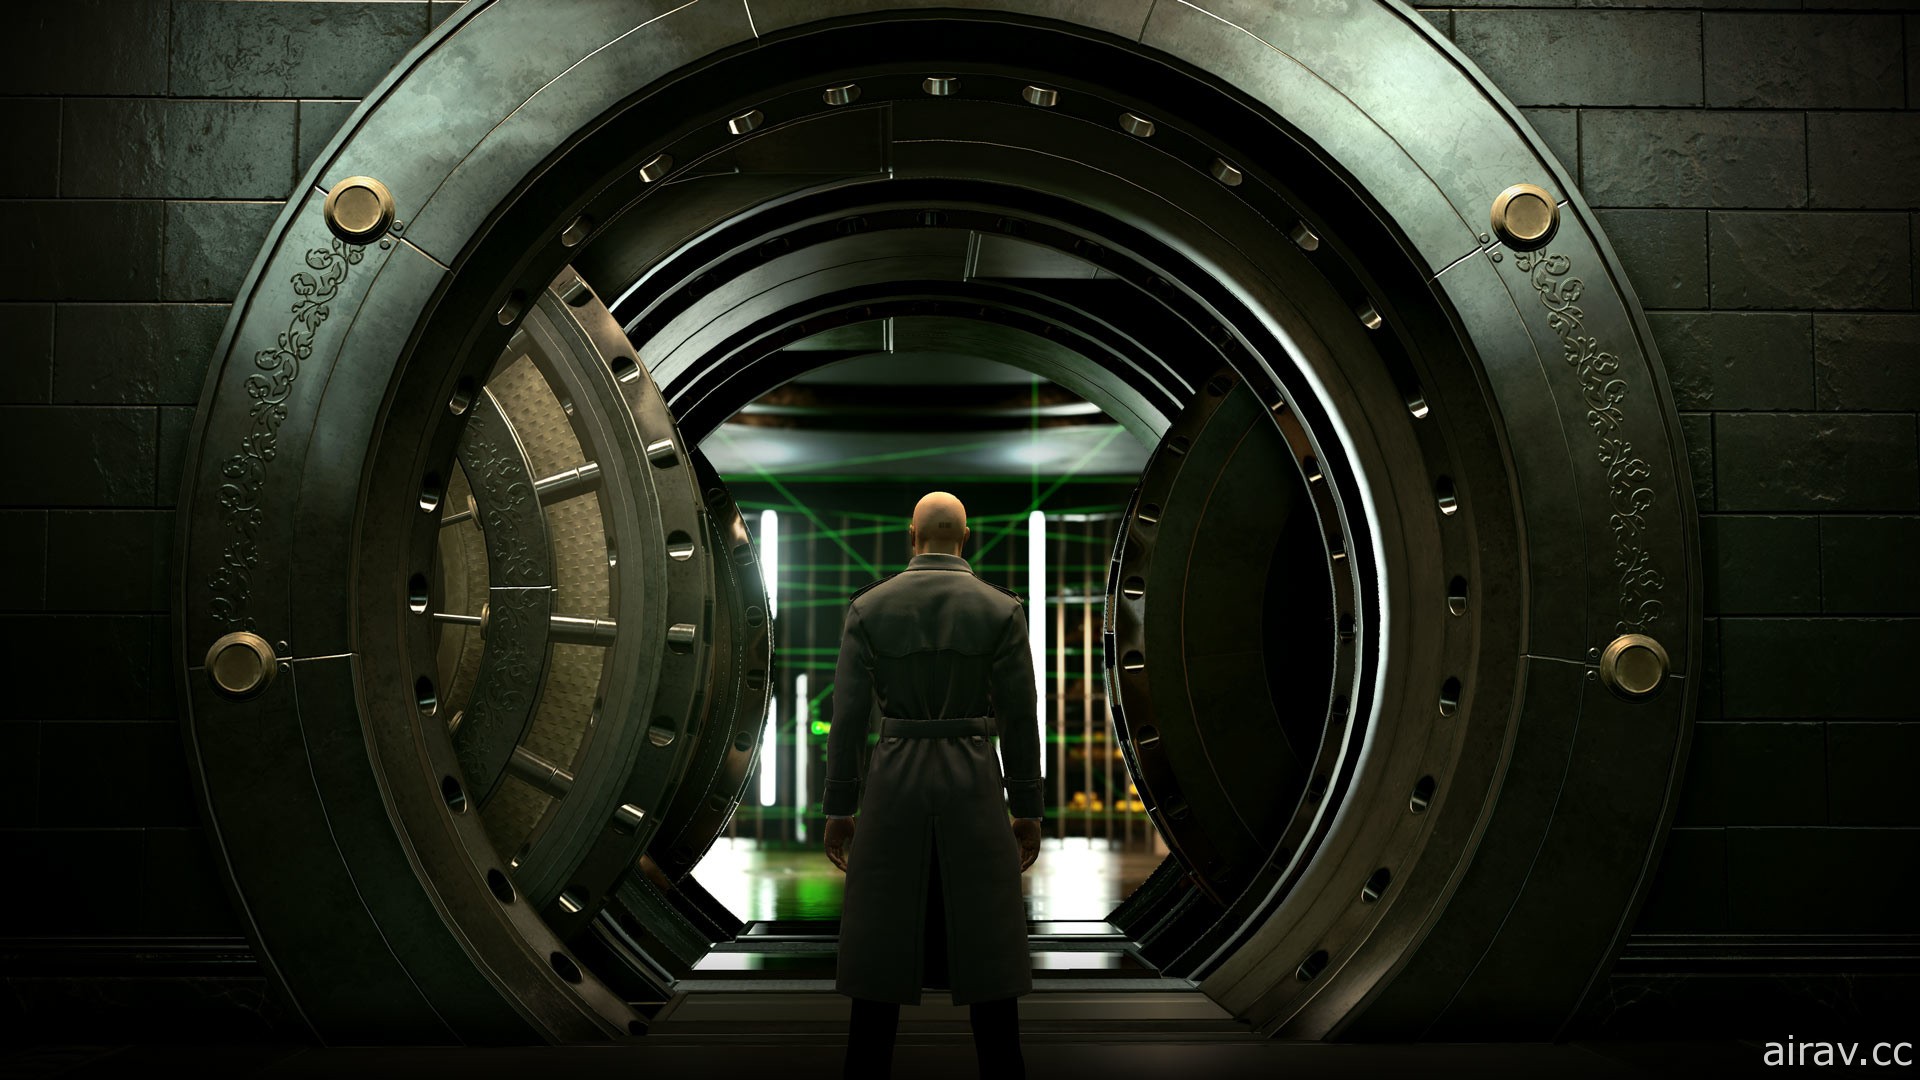 《刺客任务 3》释出上市宣传影片 第一杀手 47 号再次回归